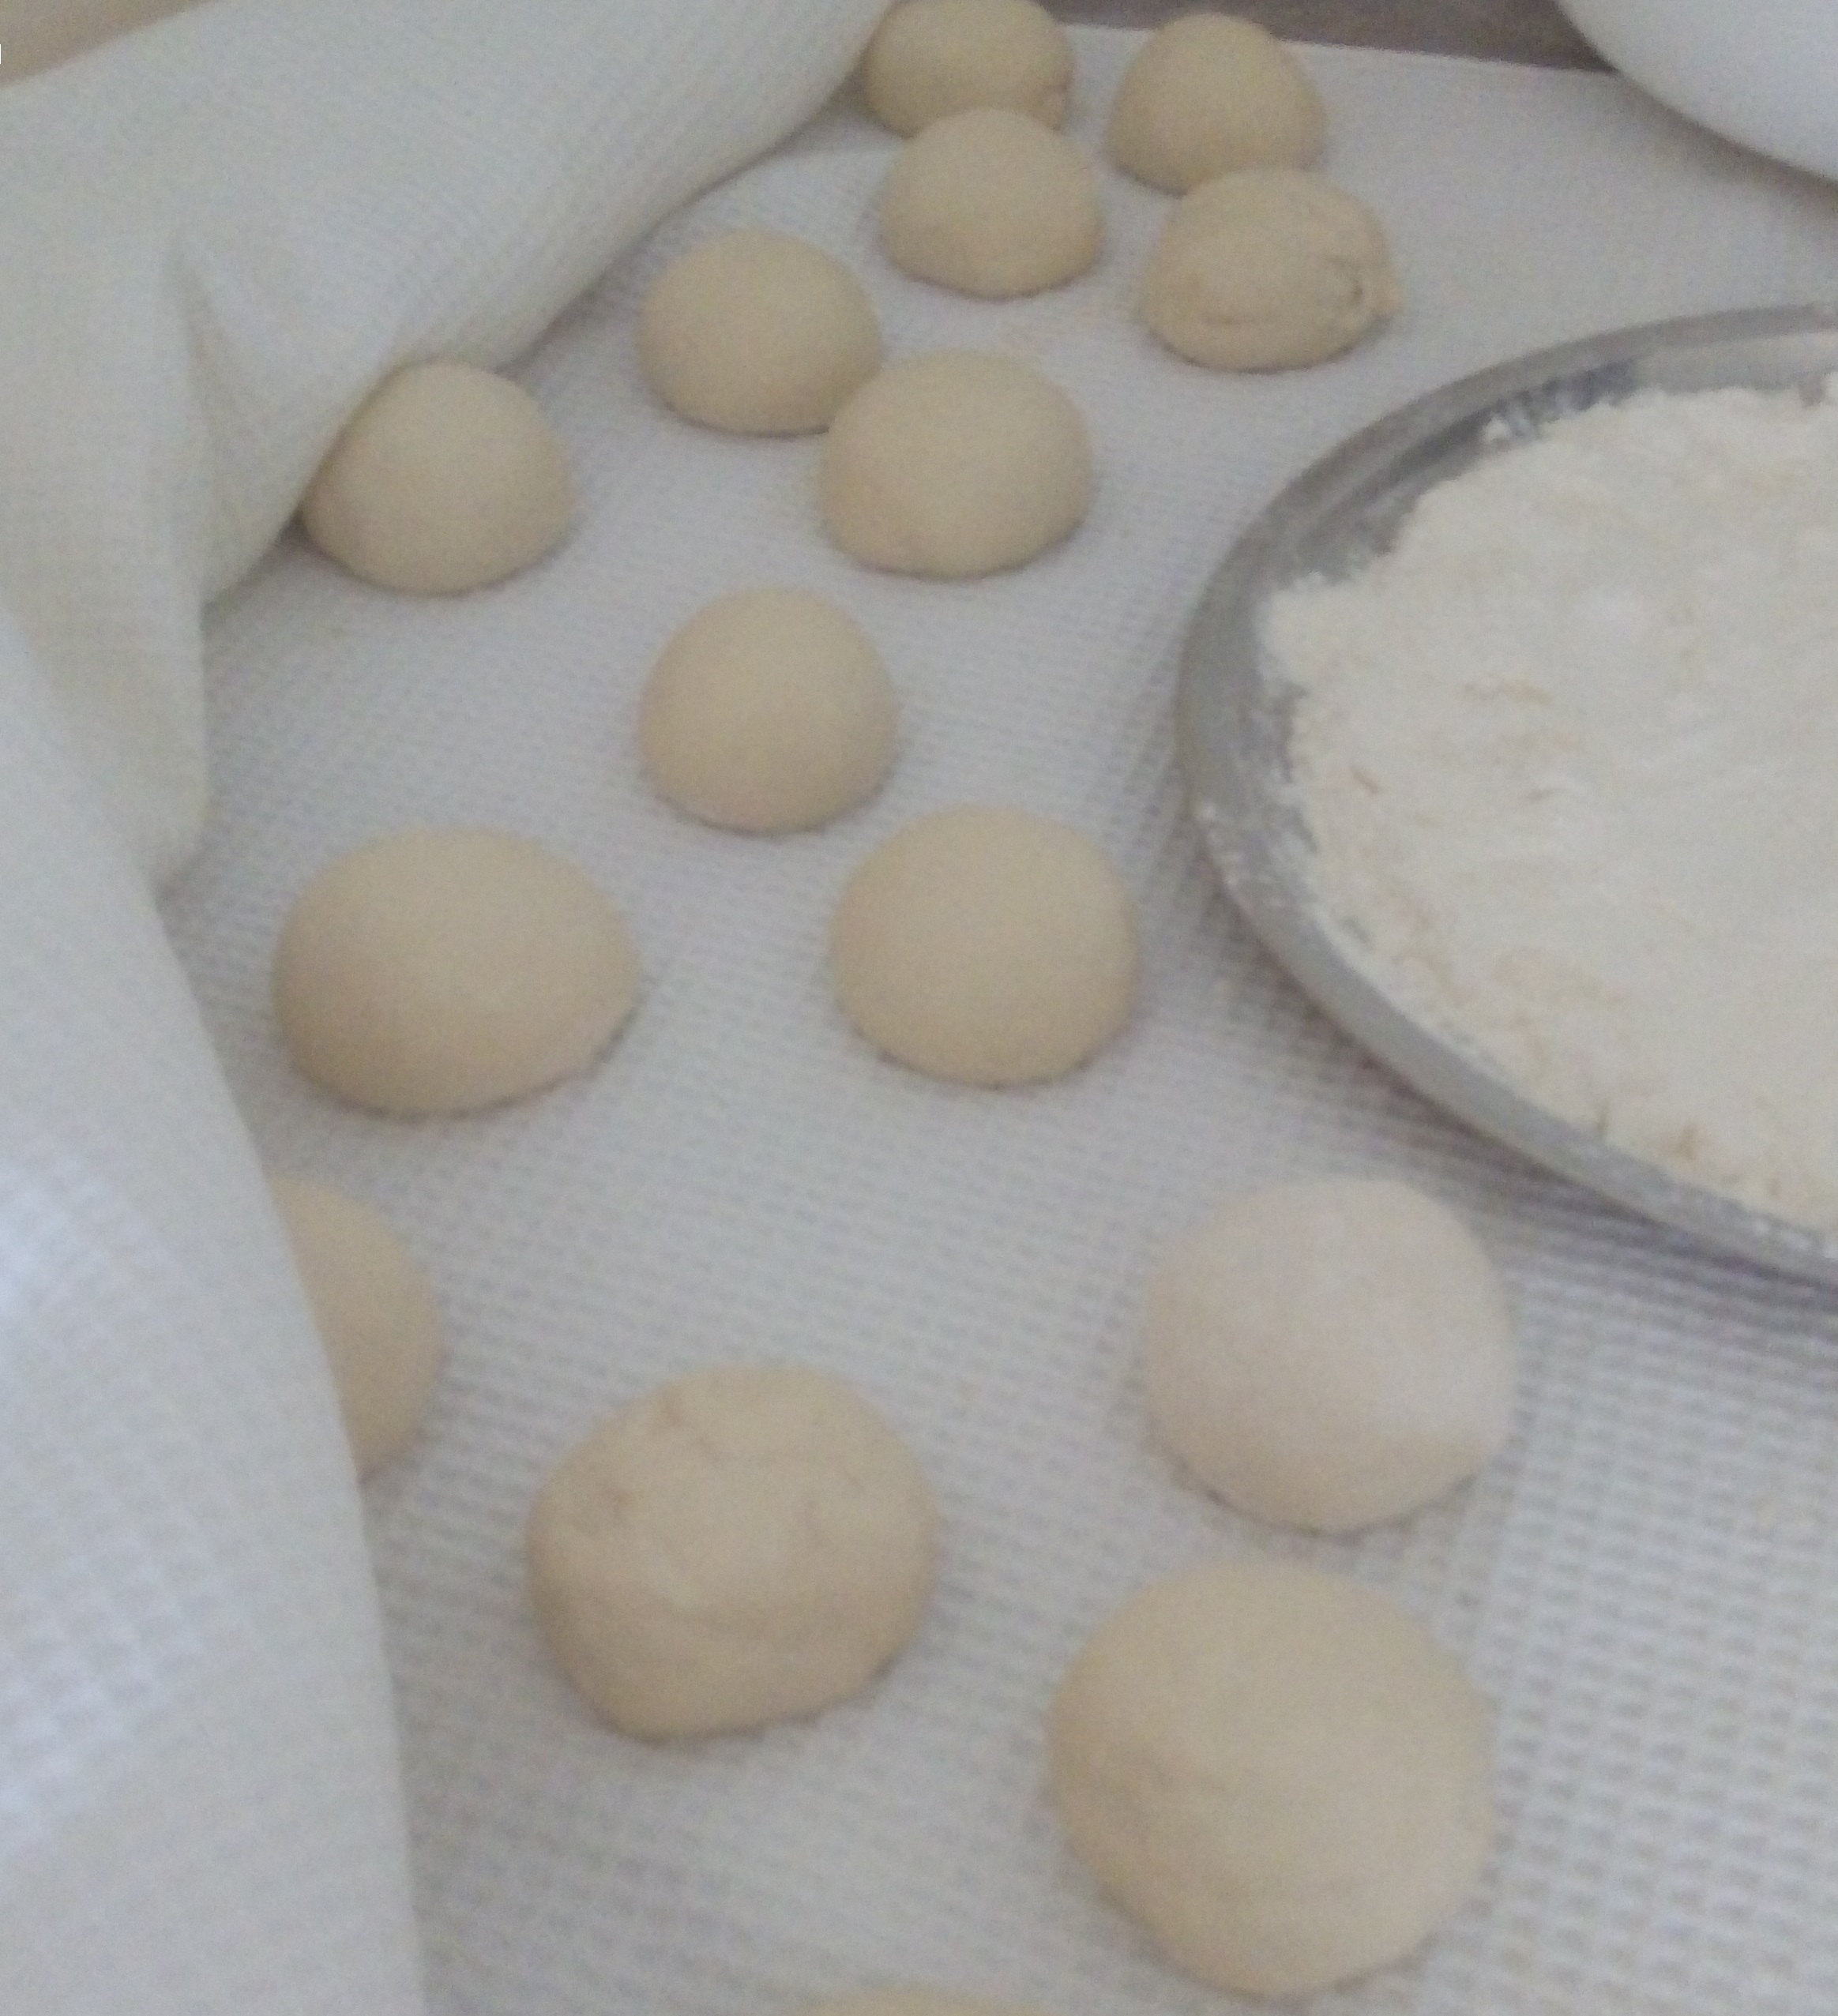 dough.jpg